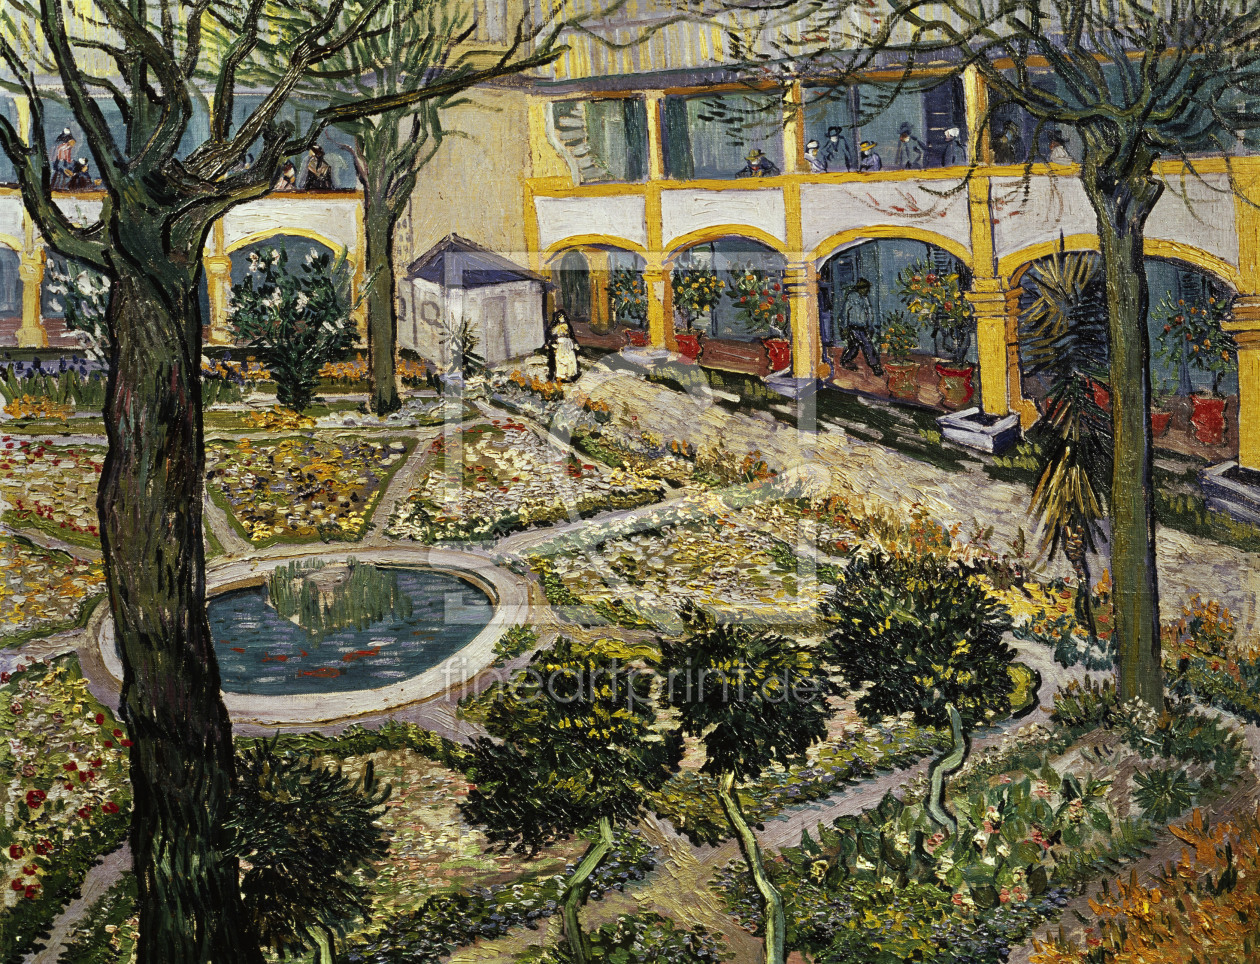 Bild-Nr.: 30002862 van Gogh / Hospital Garden in Arles erstellt von van Gogh, Vincent